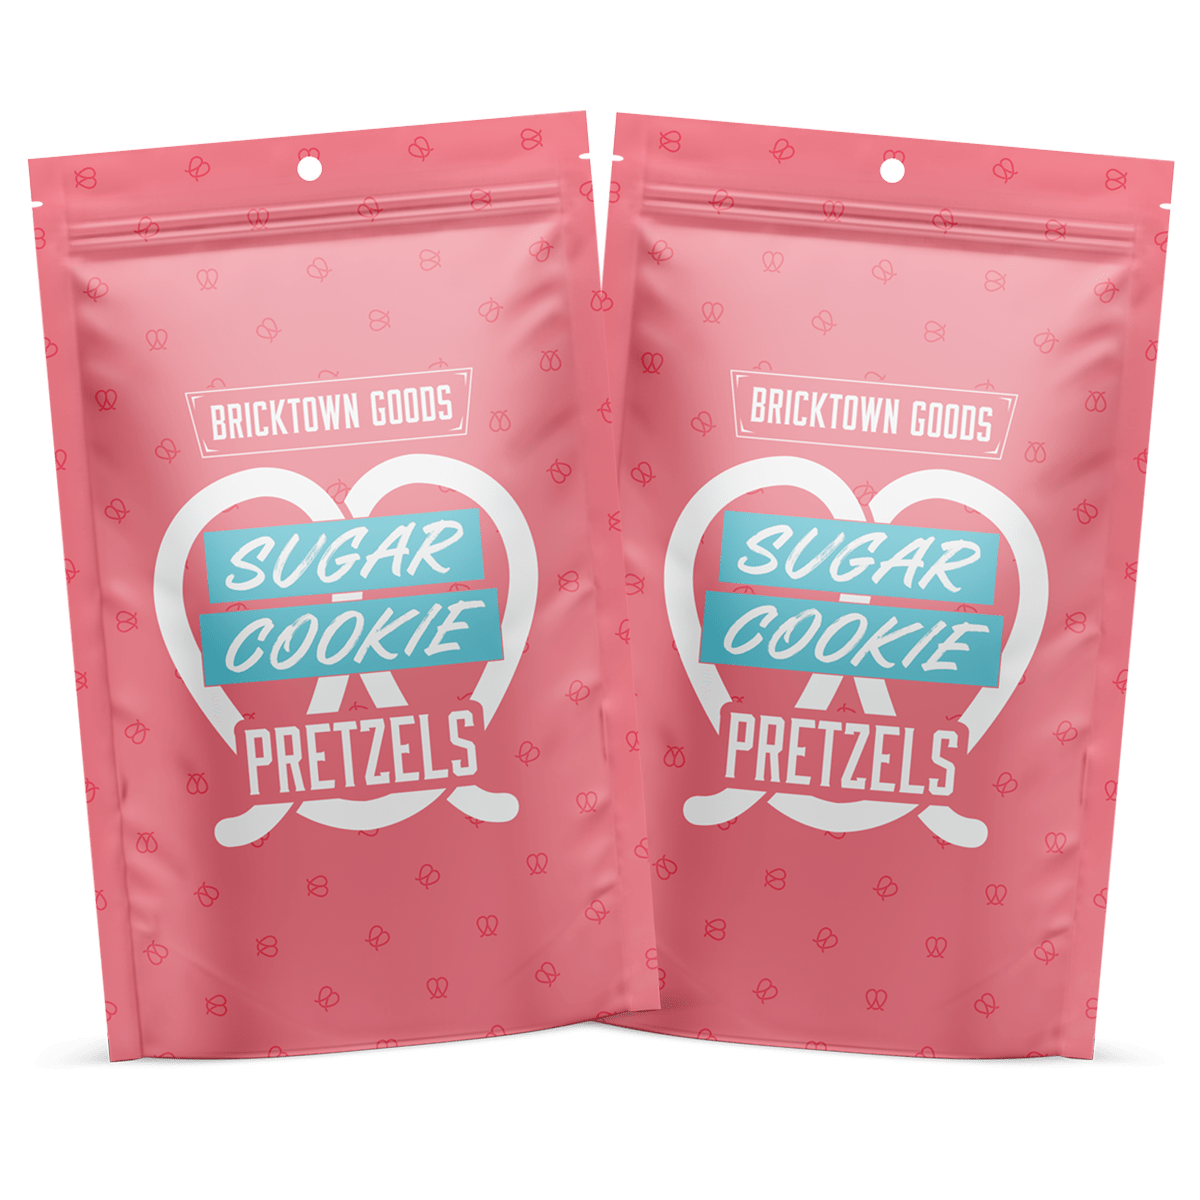 Flavored Pretzels - Sugar Cookie by Bricktown Roasters